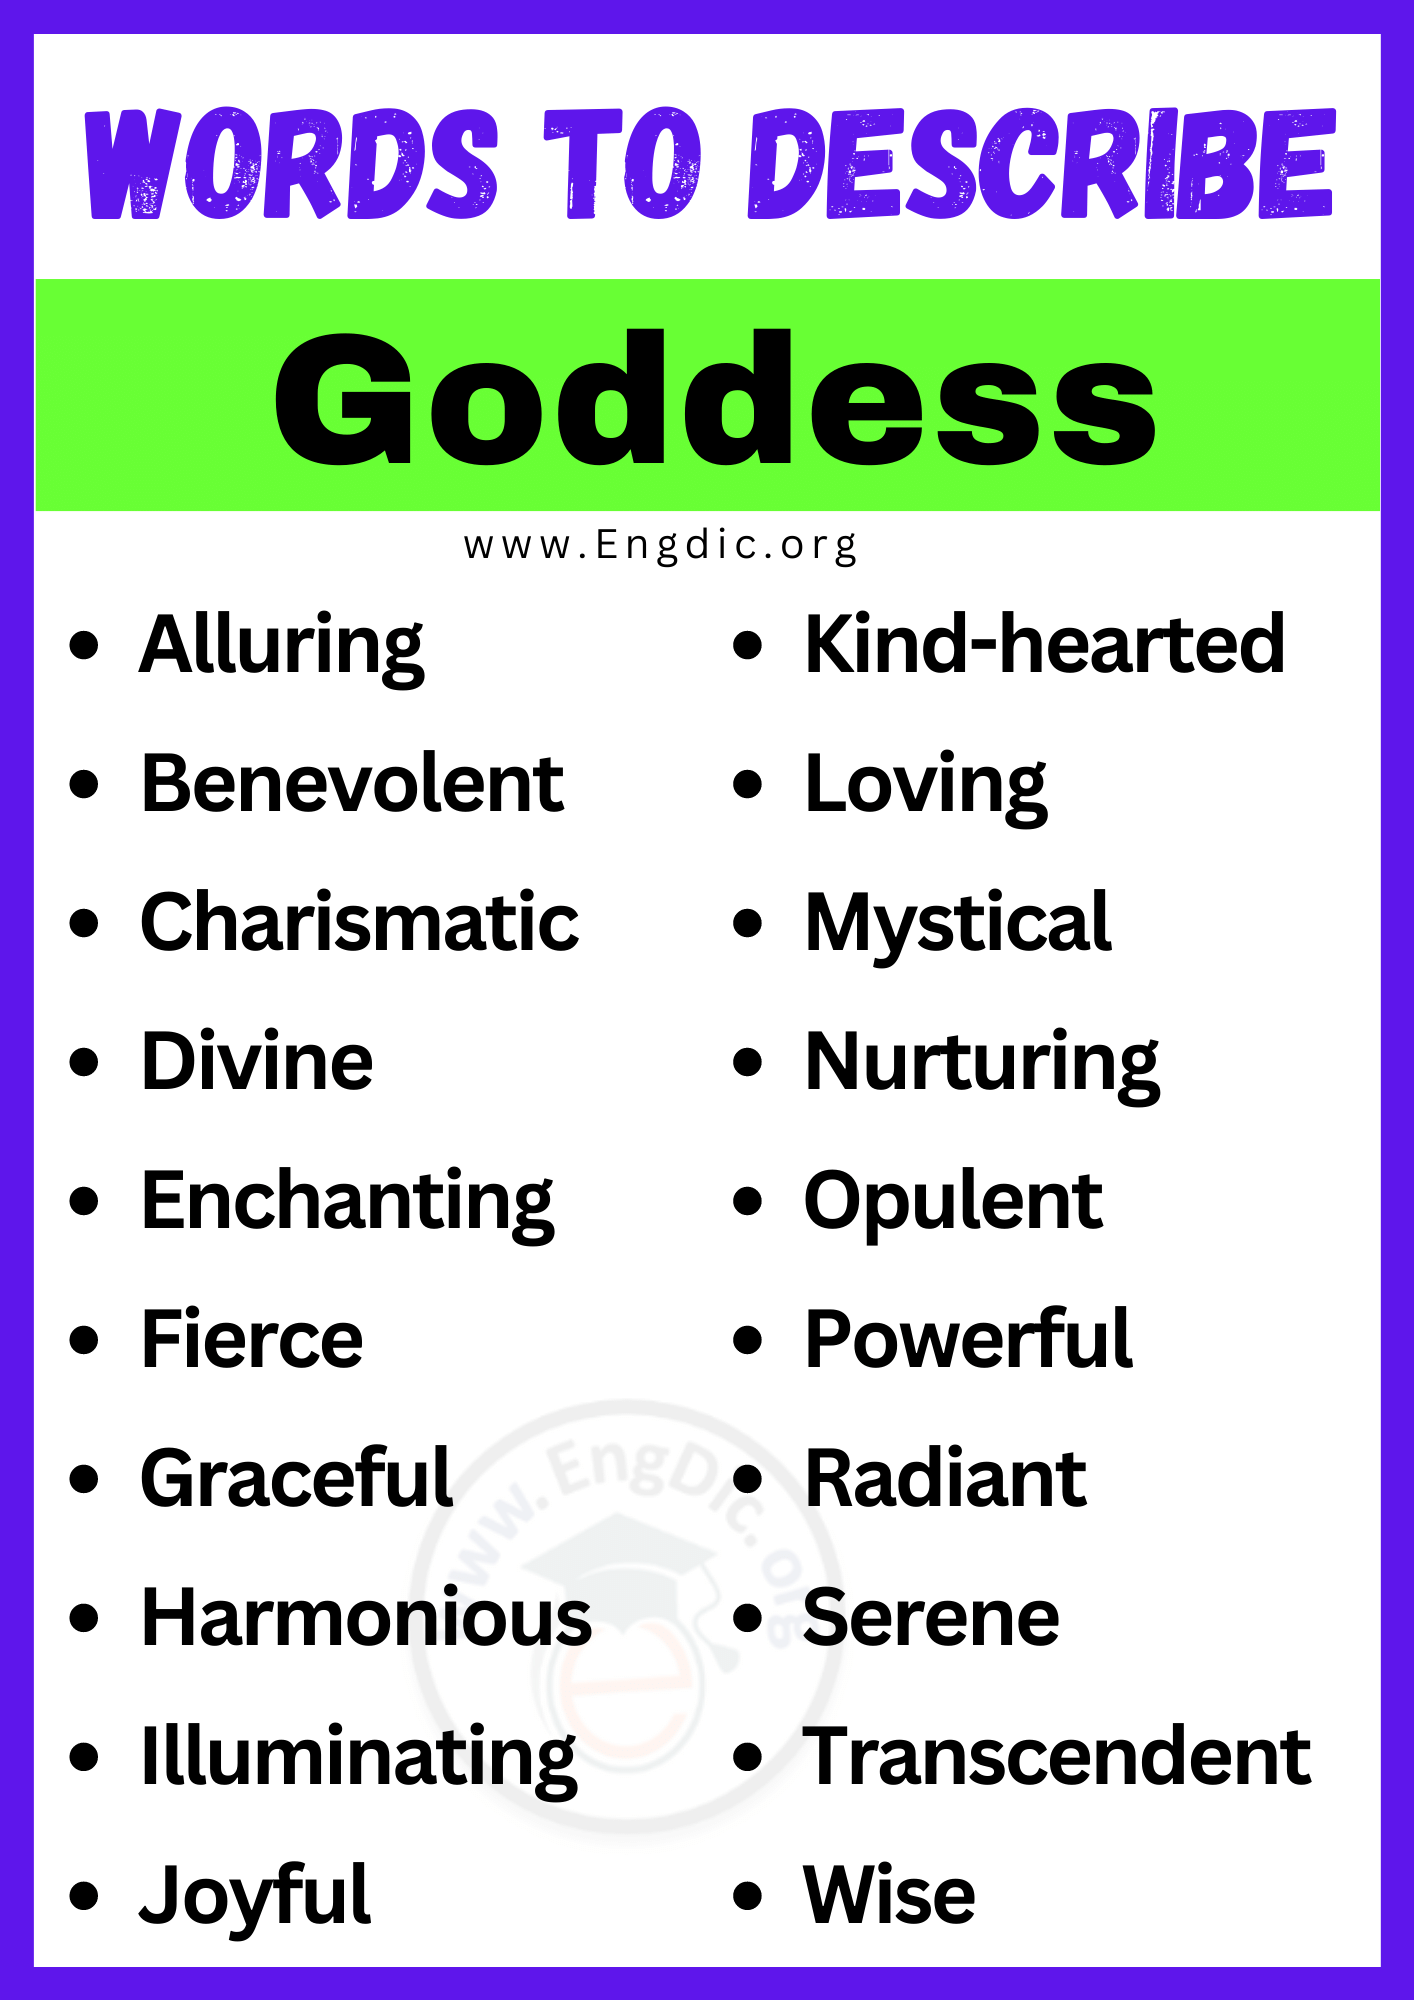 Words to Describe Goddess